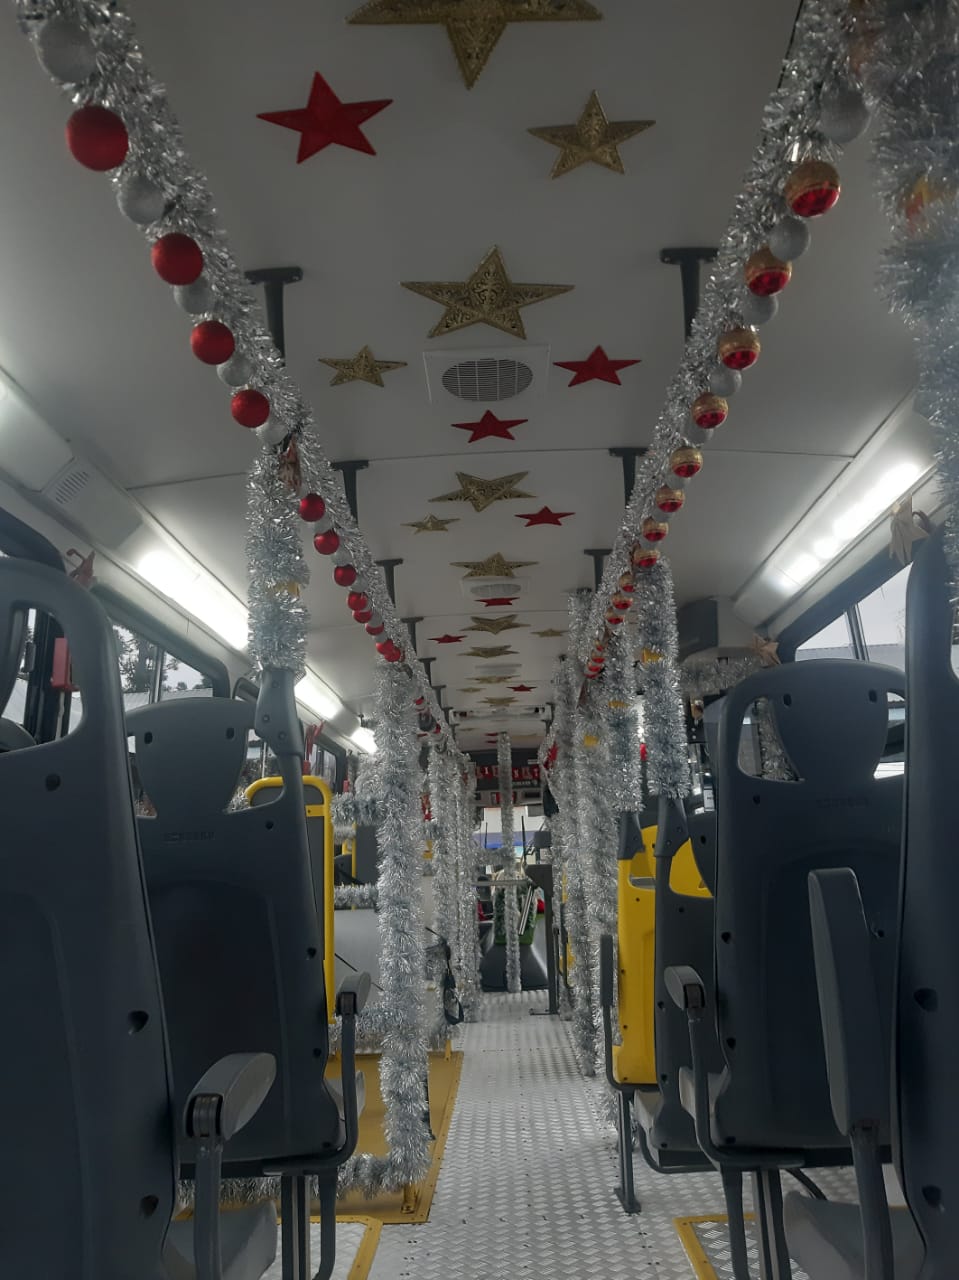 Ônibus também está decorado com objetos natalinos